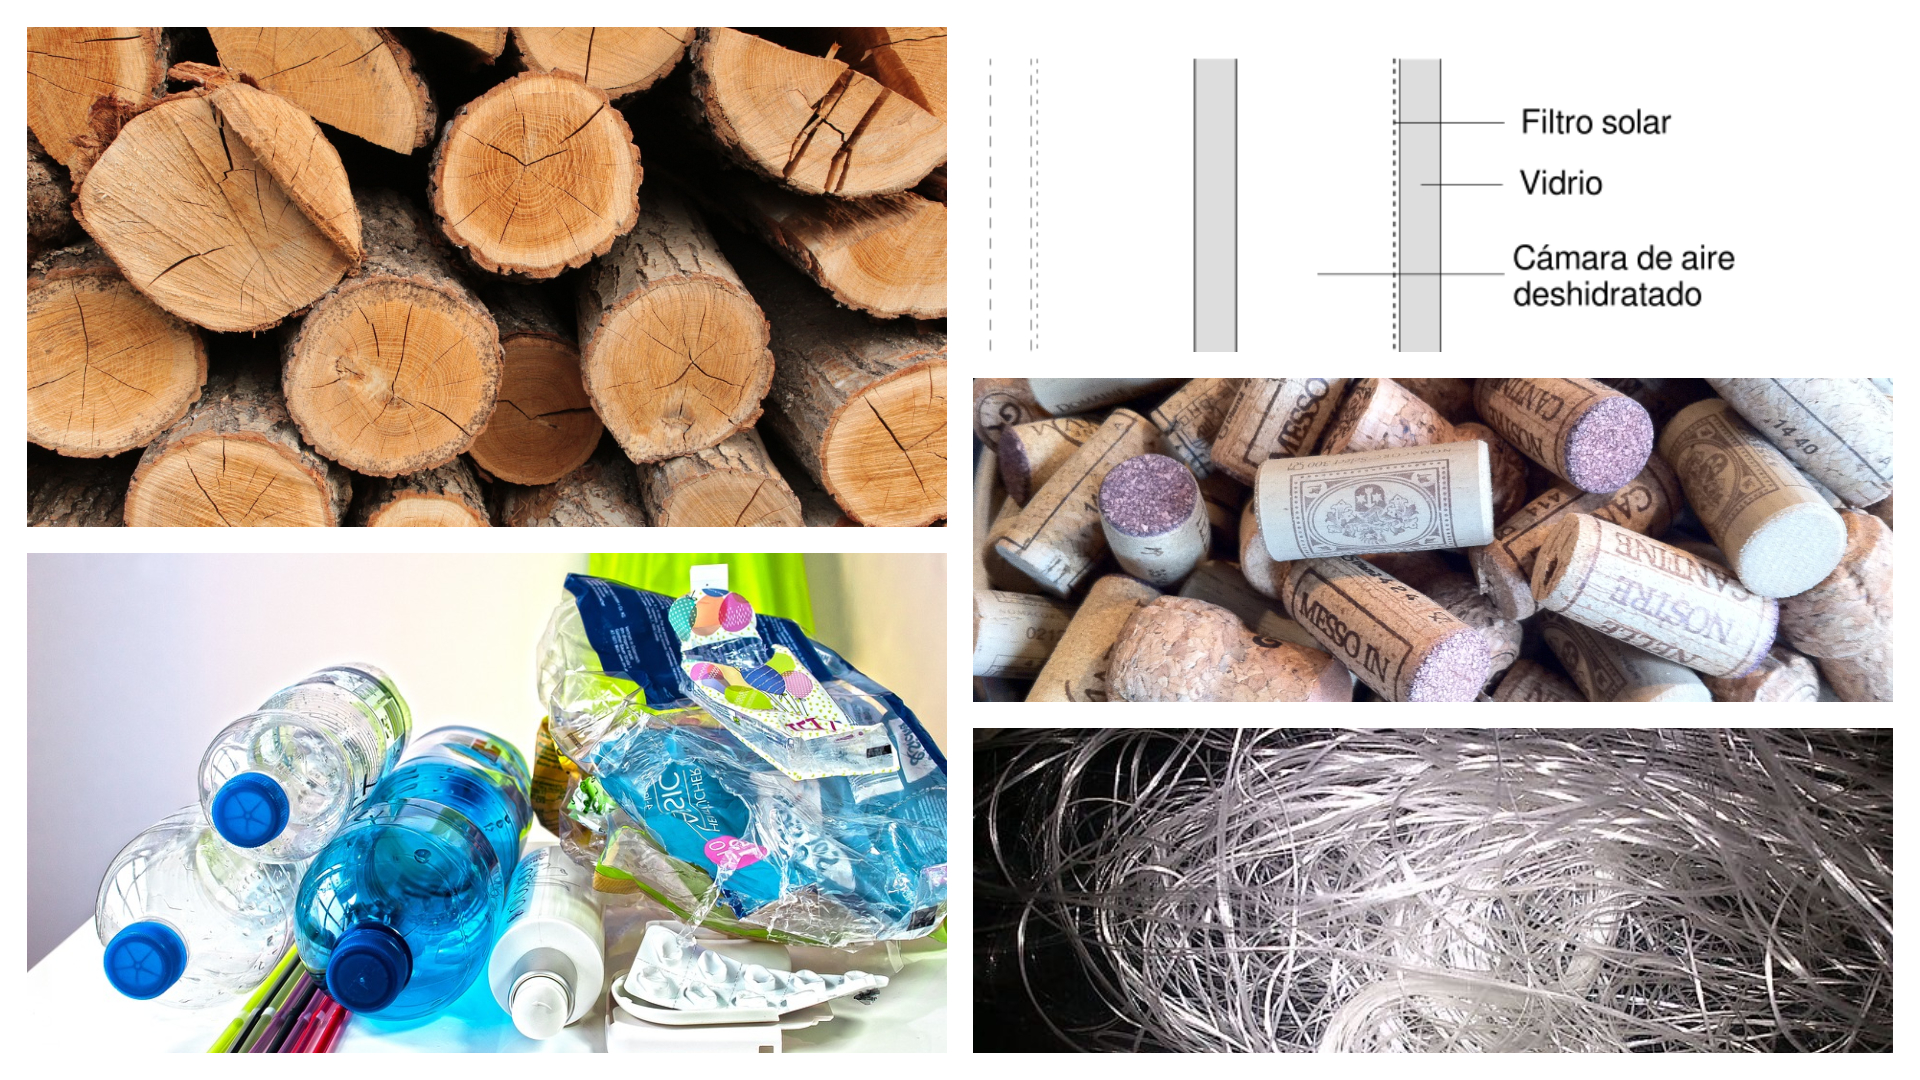 Imagen de materiales aislantes térmicos: madera, plástico, aire, corcho y fibra de vidrio